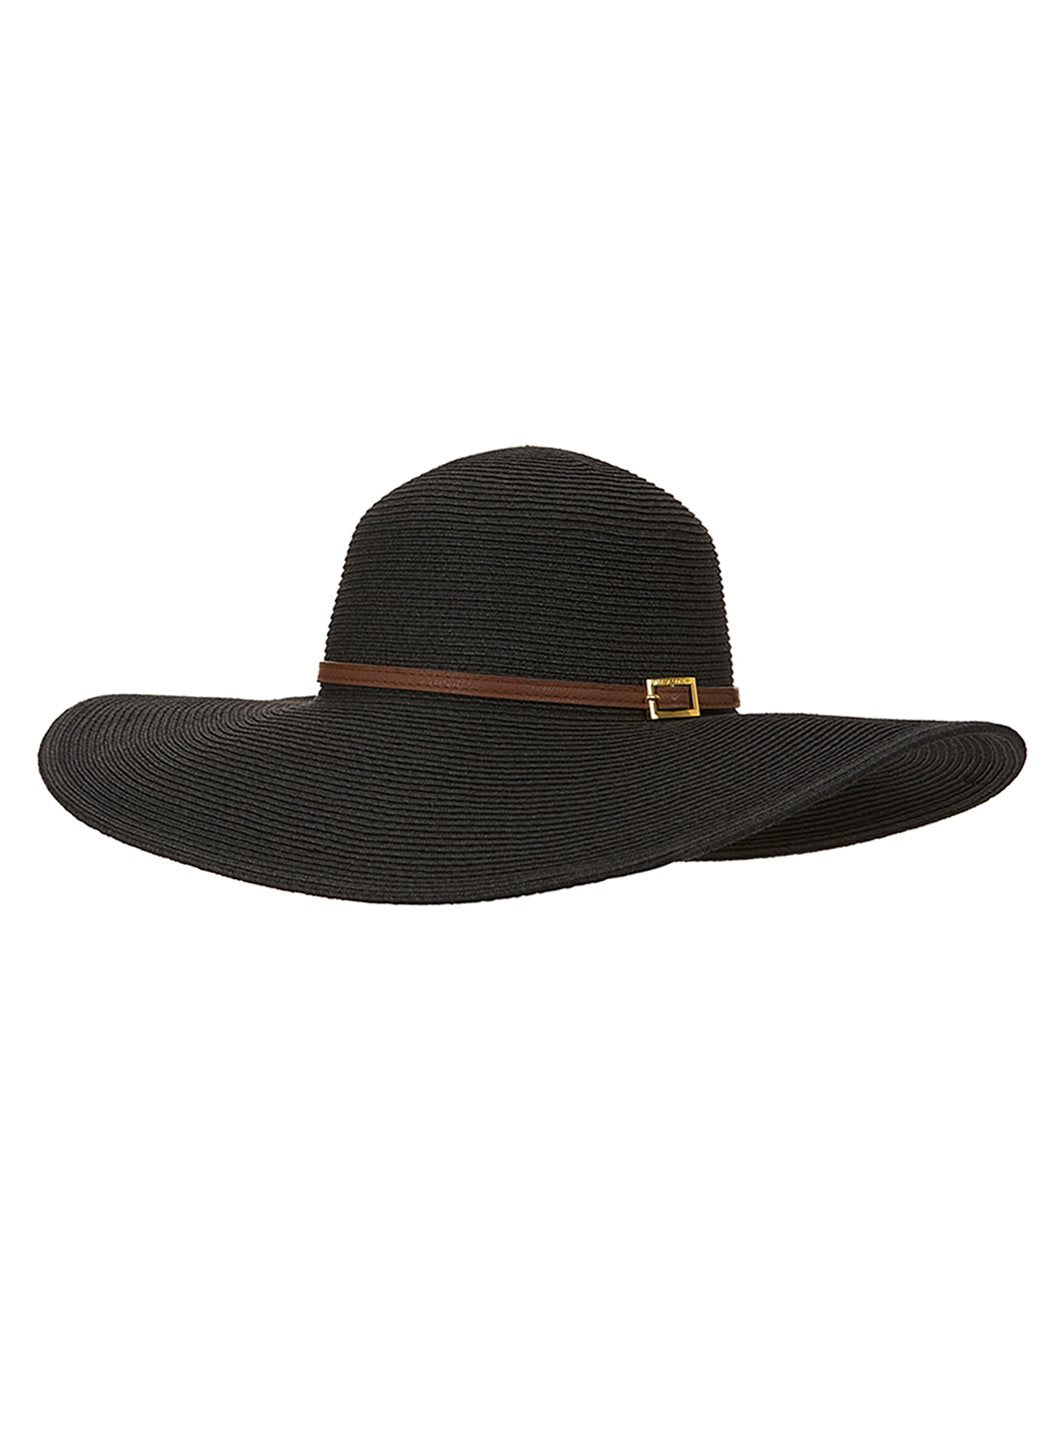 Melissa Odabash Jemima Black Wide Brimmed Hat